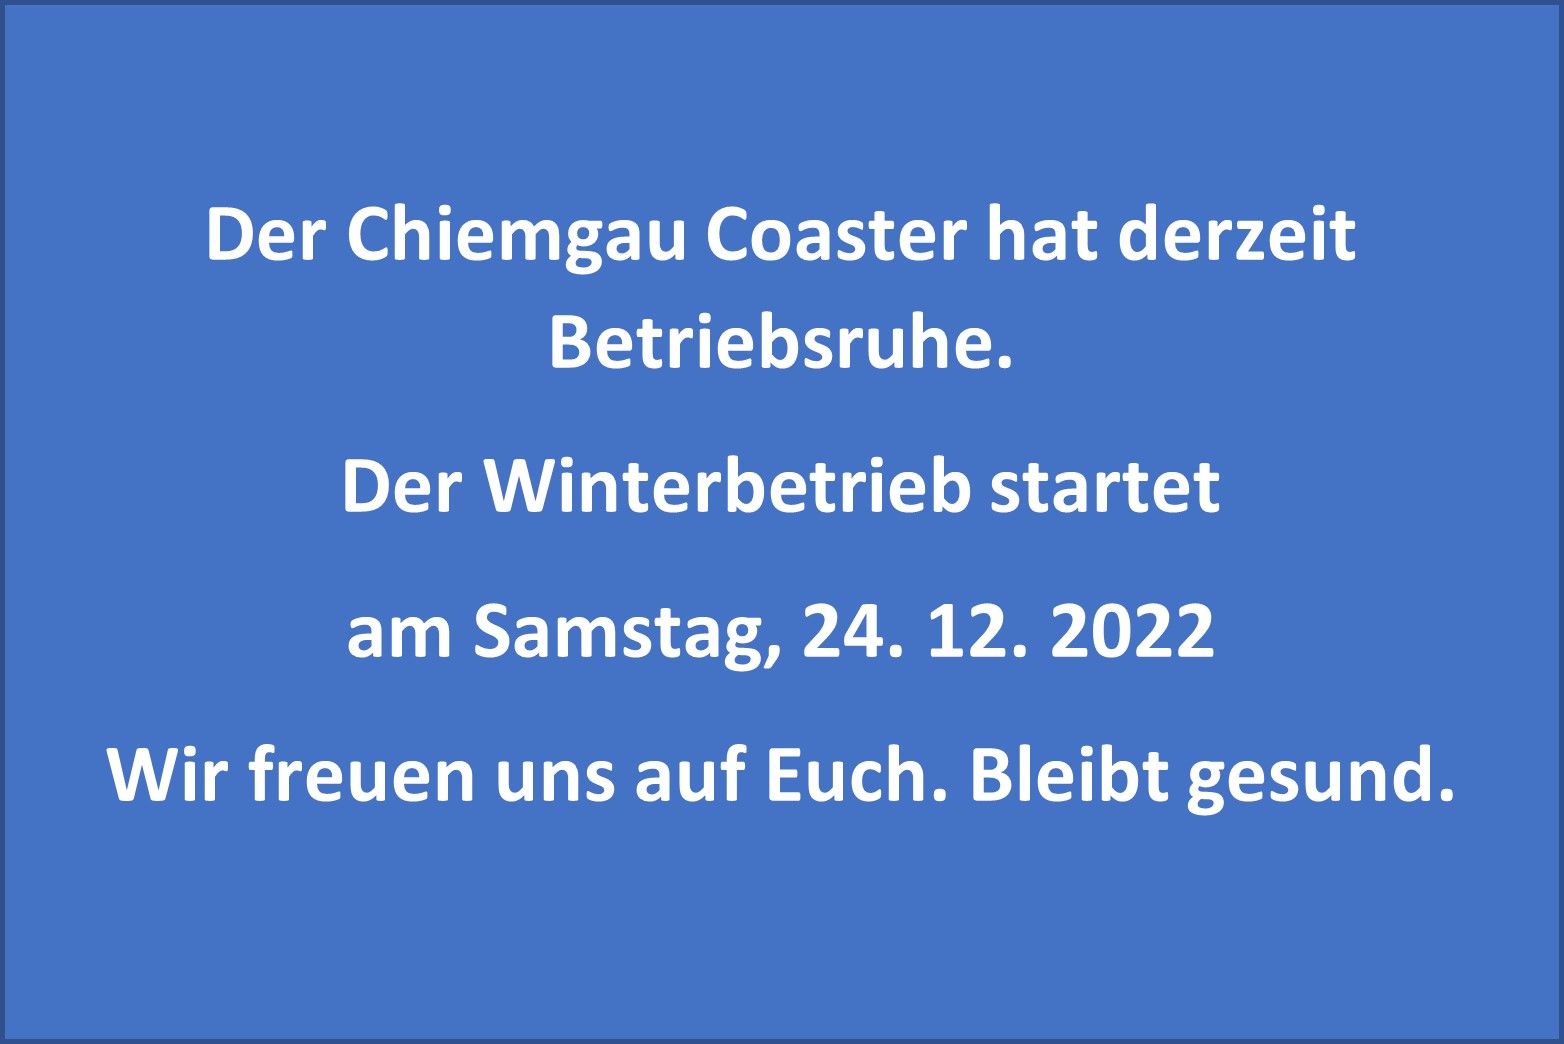 Der Chiemgau Coaster hat Betriebsruhe bis einschl. 23.12.2022.